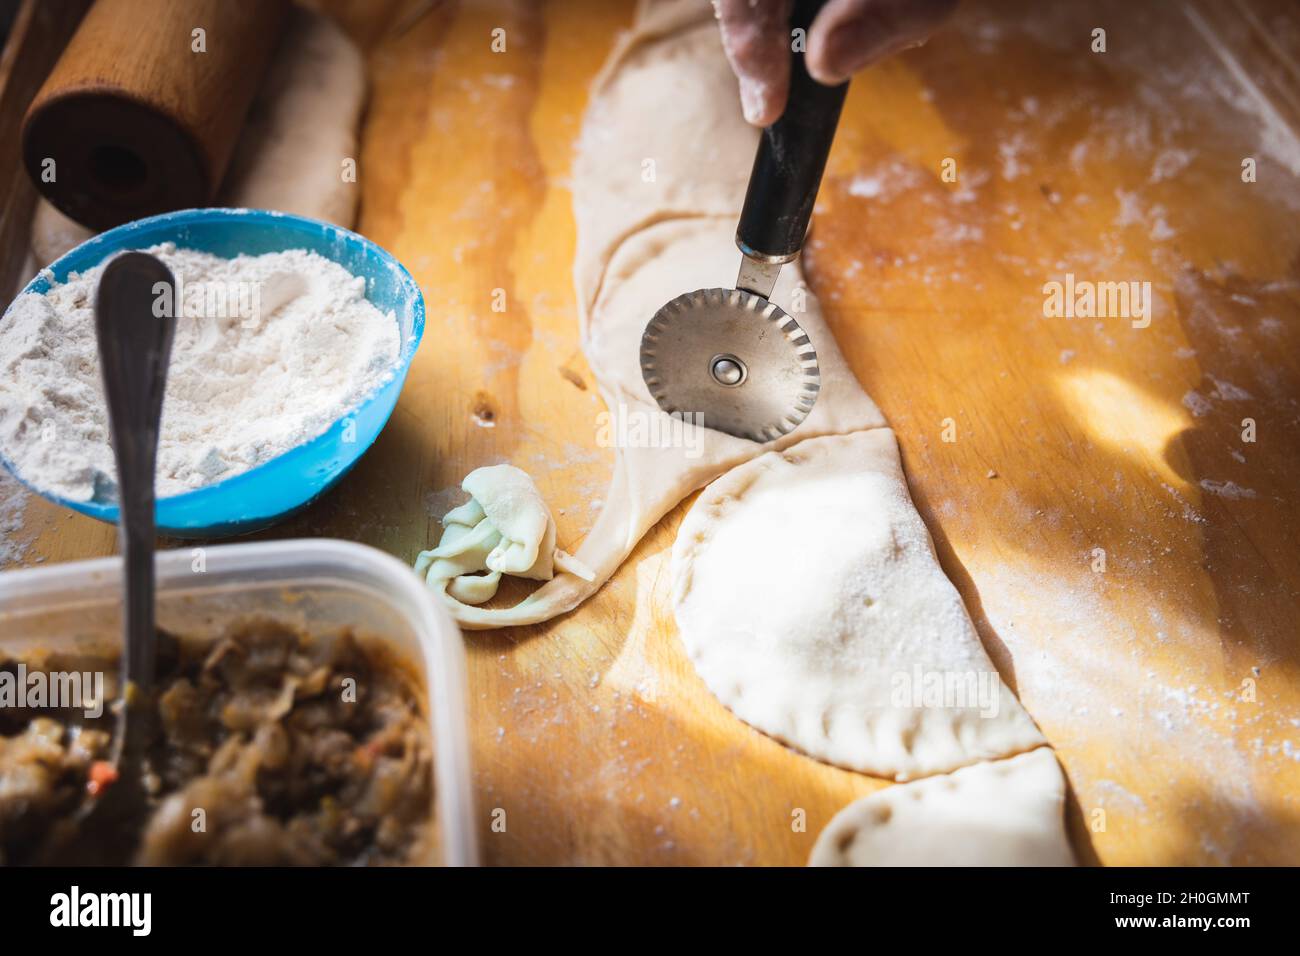 Frauenhände machen Empanadas. Ethnische Küche. Stockfoto